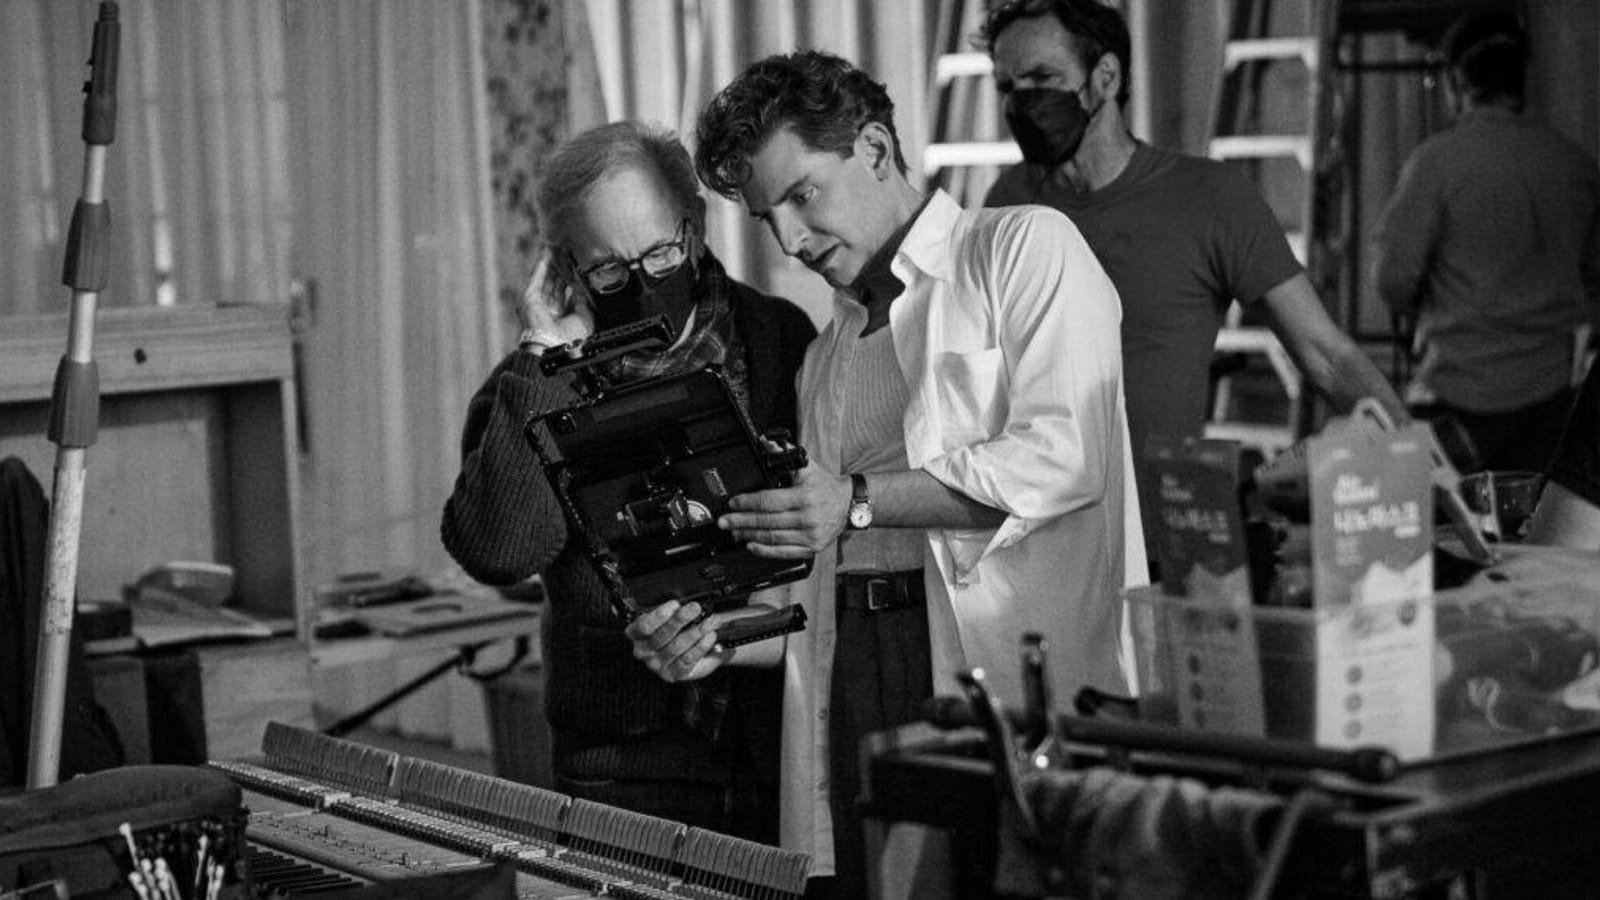 ‘Maestro’: Why Steven Spielberg Asked Bradley Cooper to Direct & Star in Leonard Bernstein Biopic